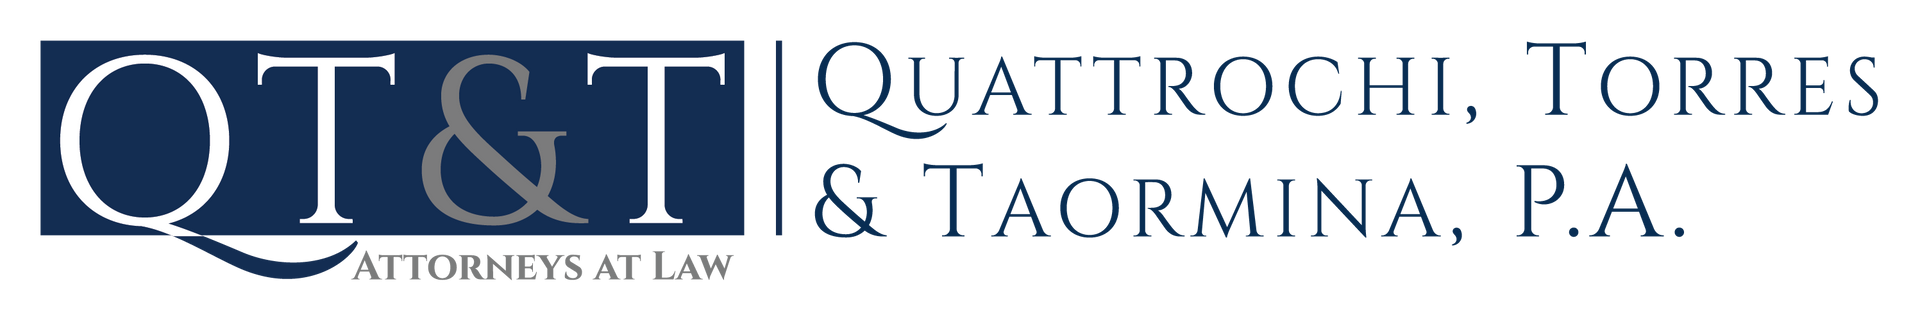 Quattrochi, Torres & Taormina, P.A. logo